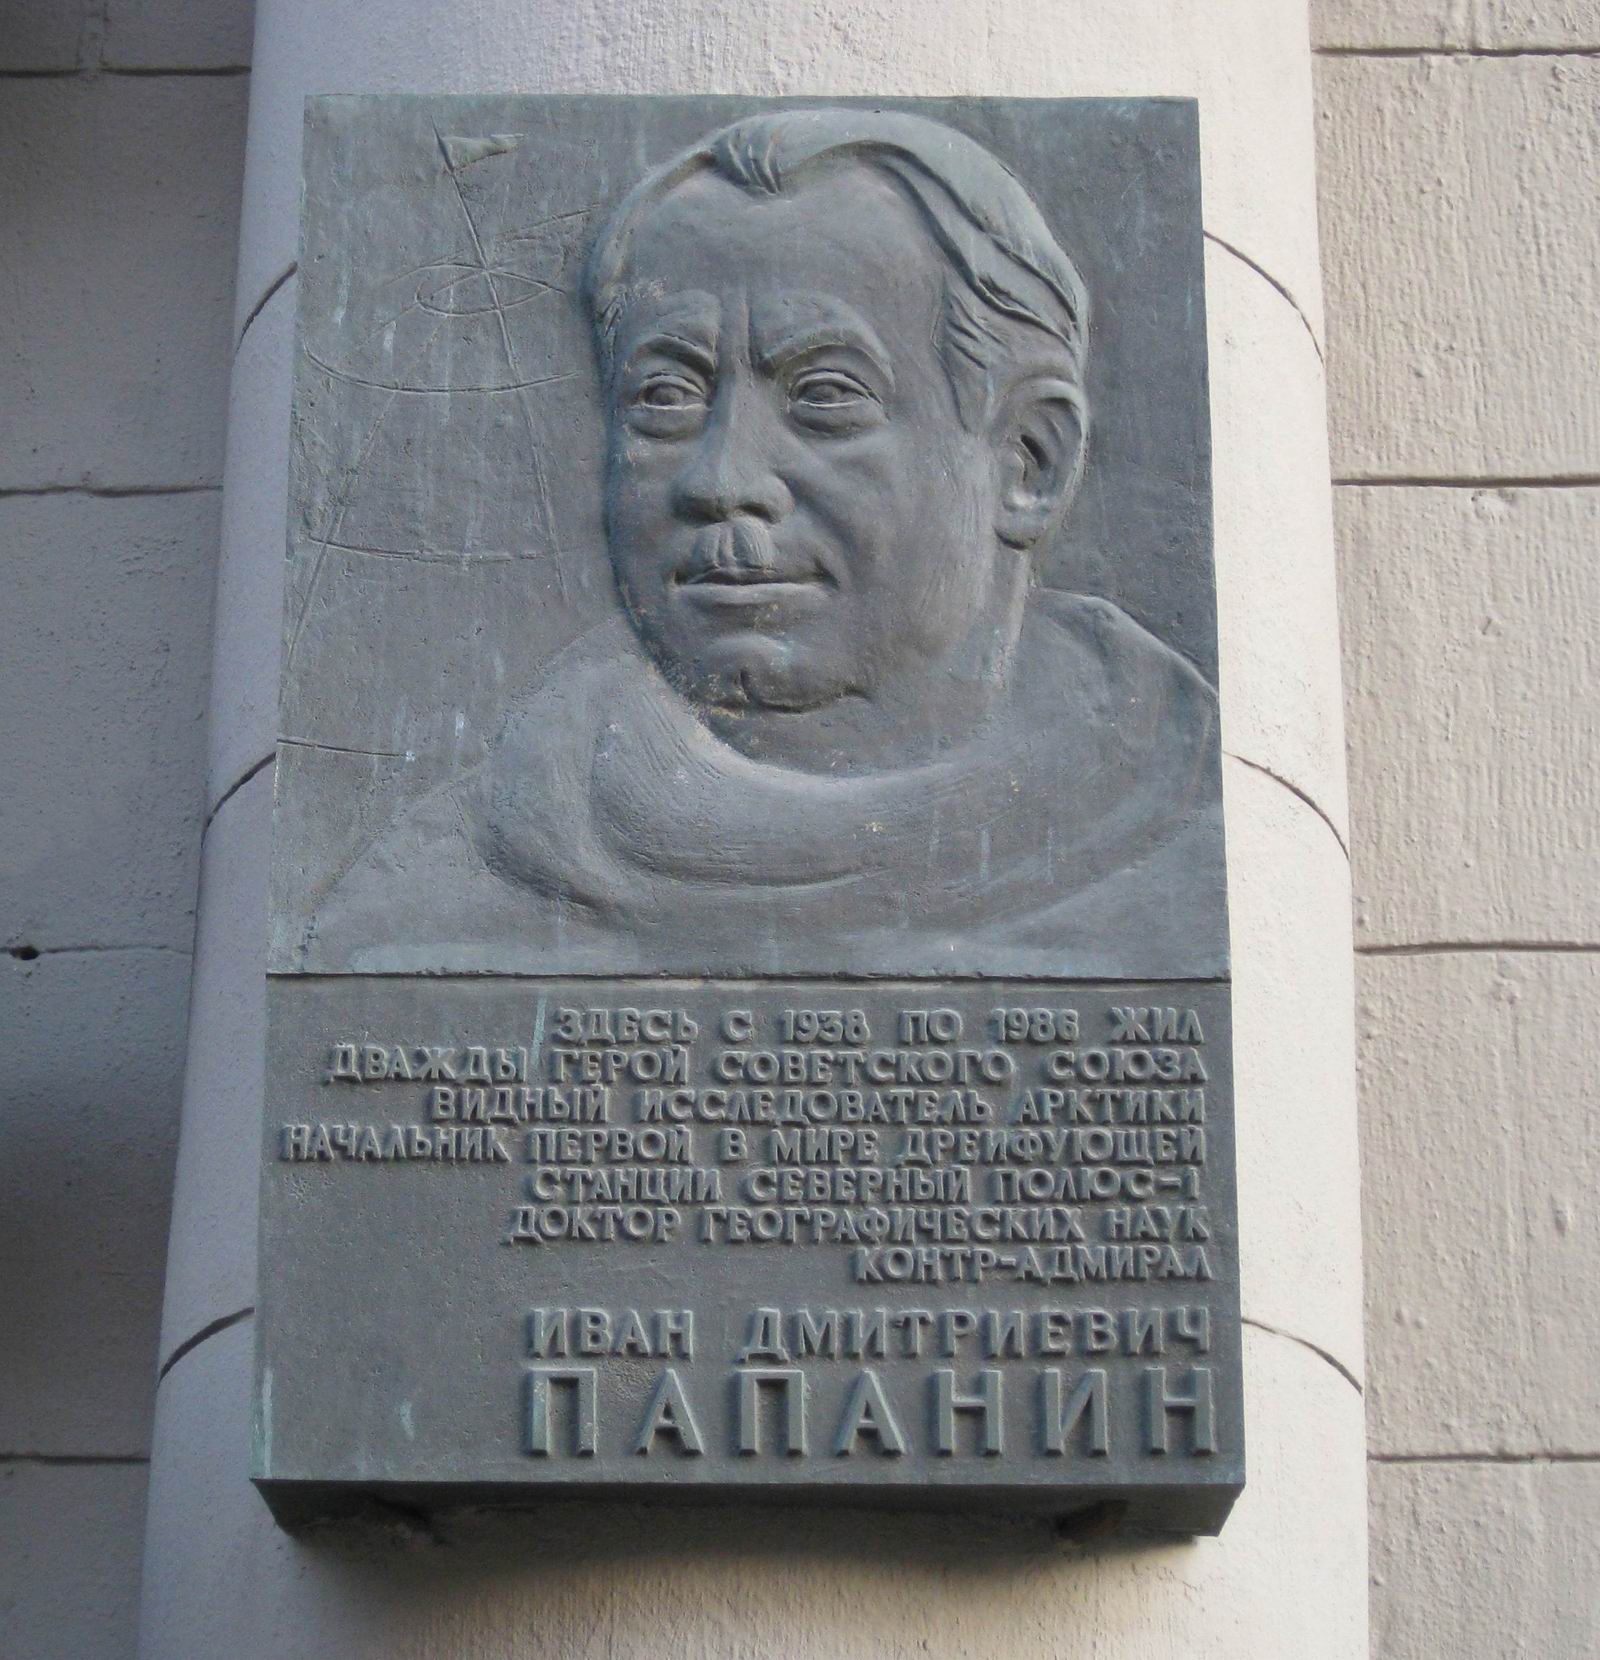 Мемориальная доска Папанину И.Д. (1894–1986), ск. Г.И.Правоторов, на улице Арбат, дом 45, открыта 30.1.1996.